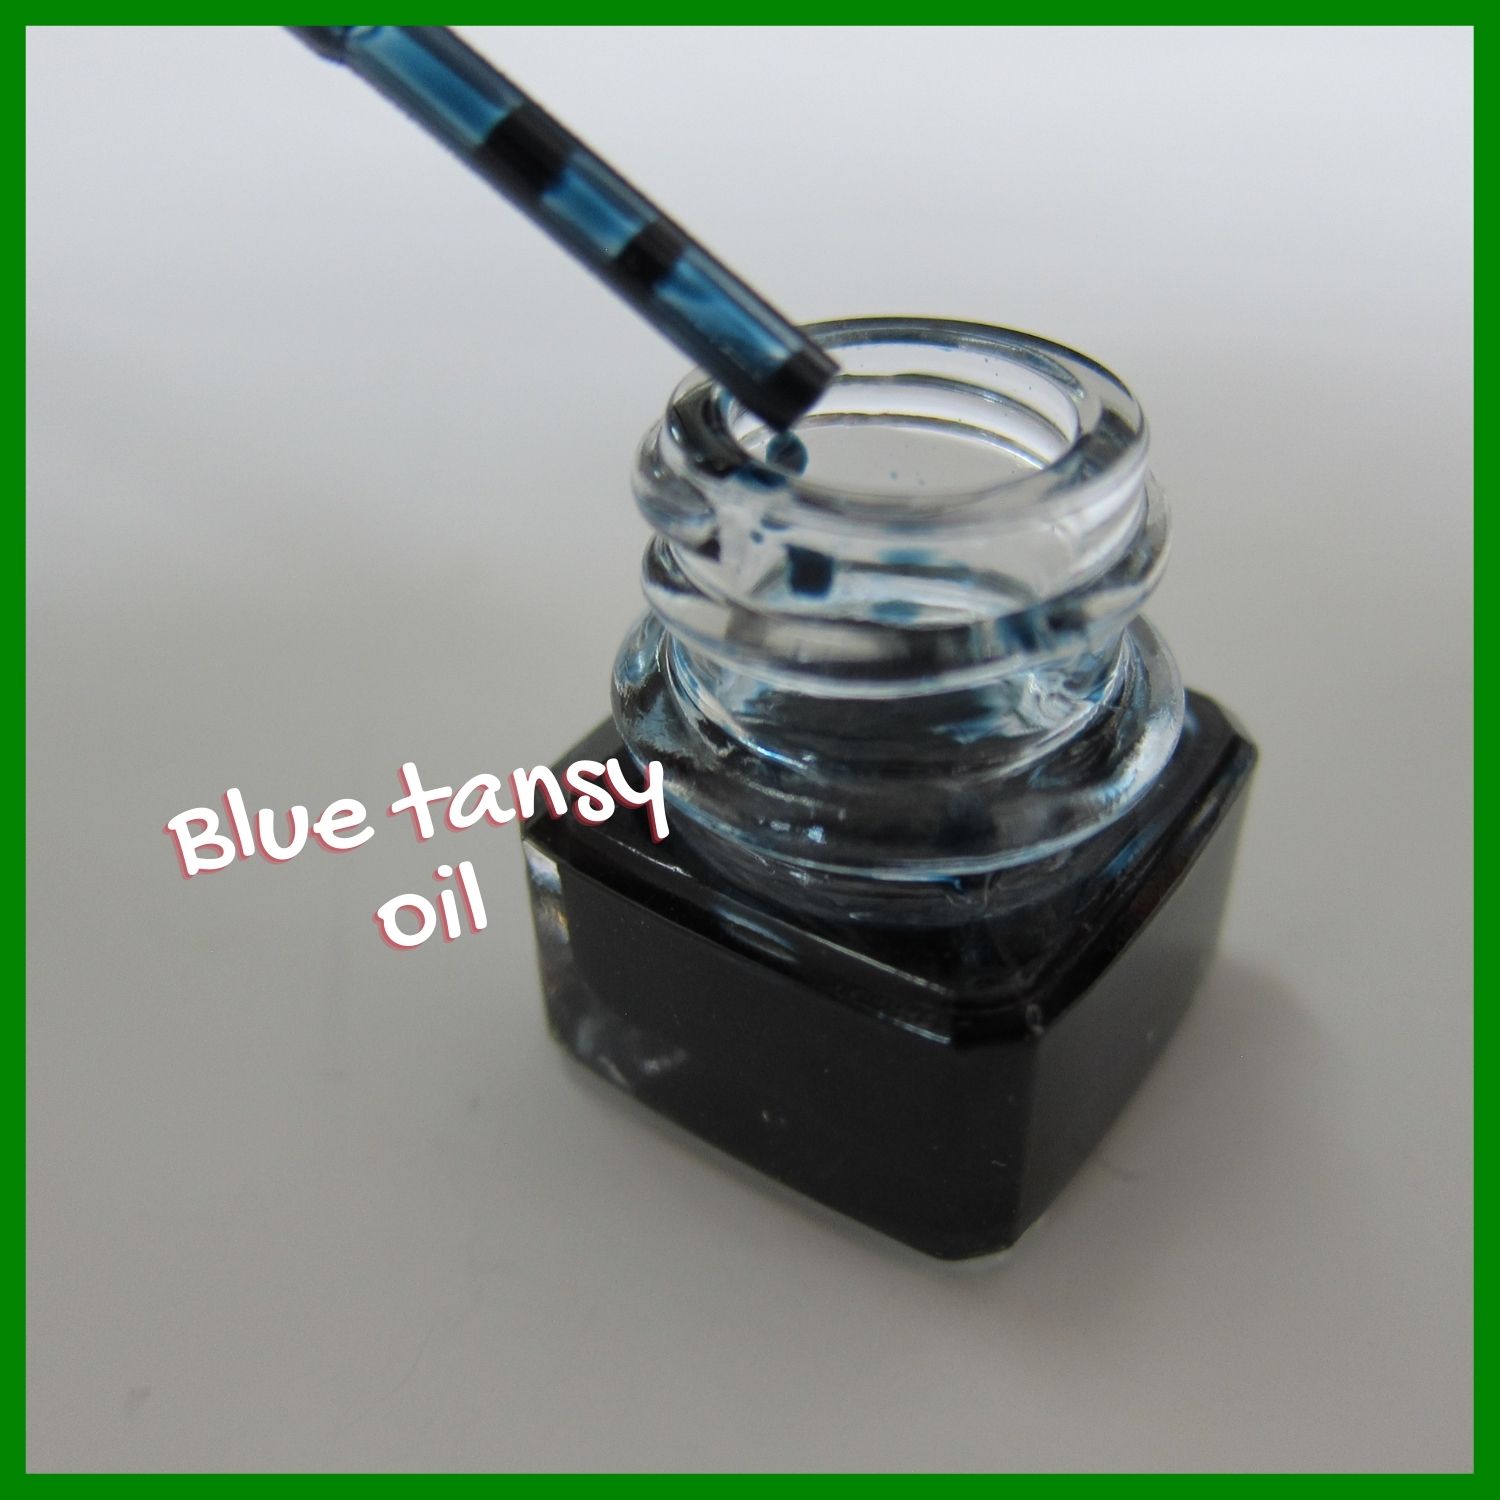 Blue tansy oil, organic